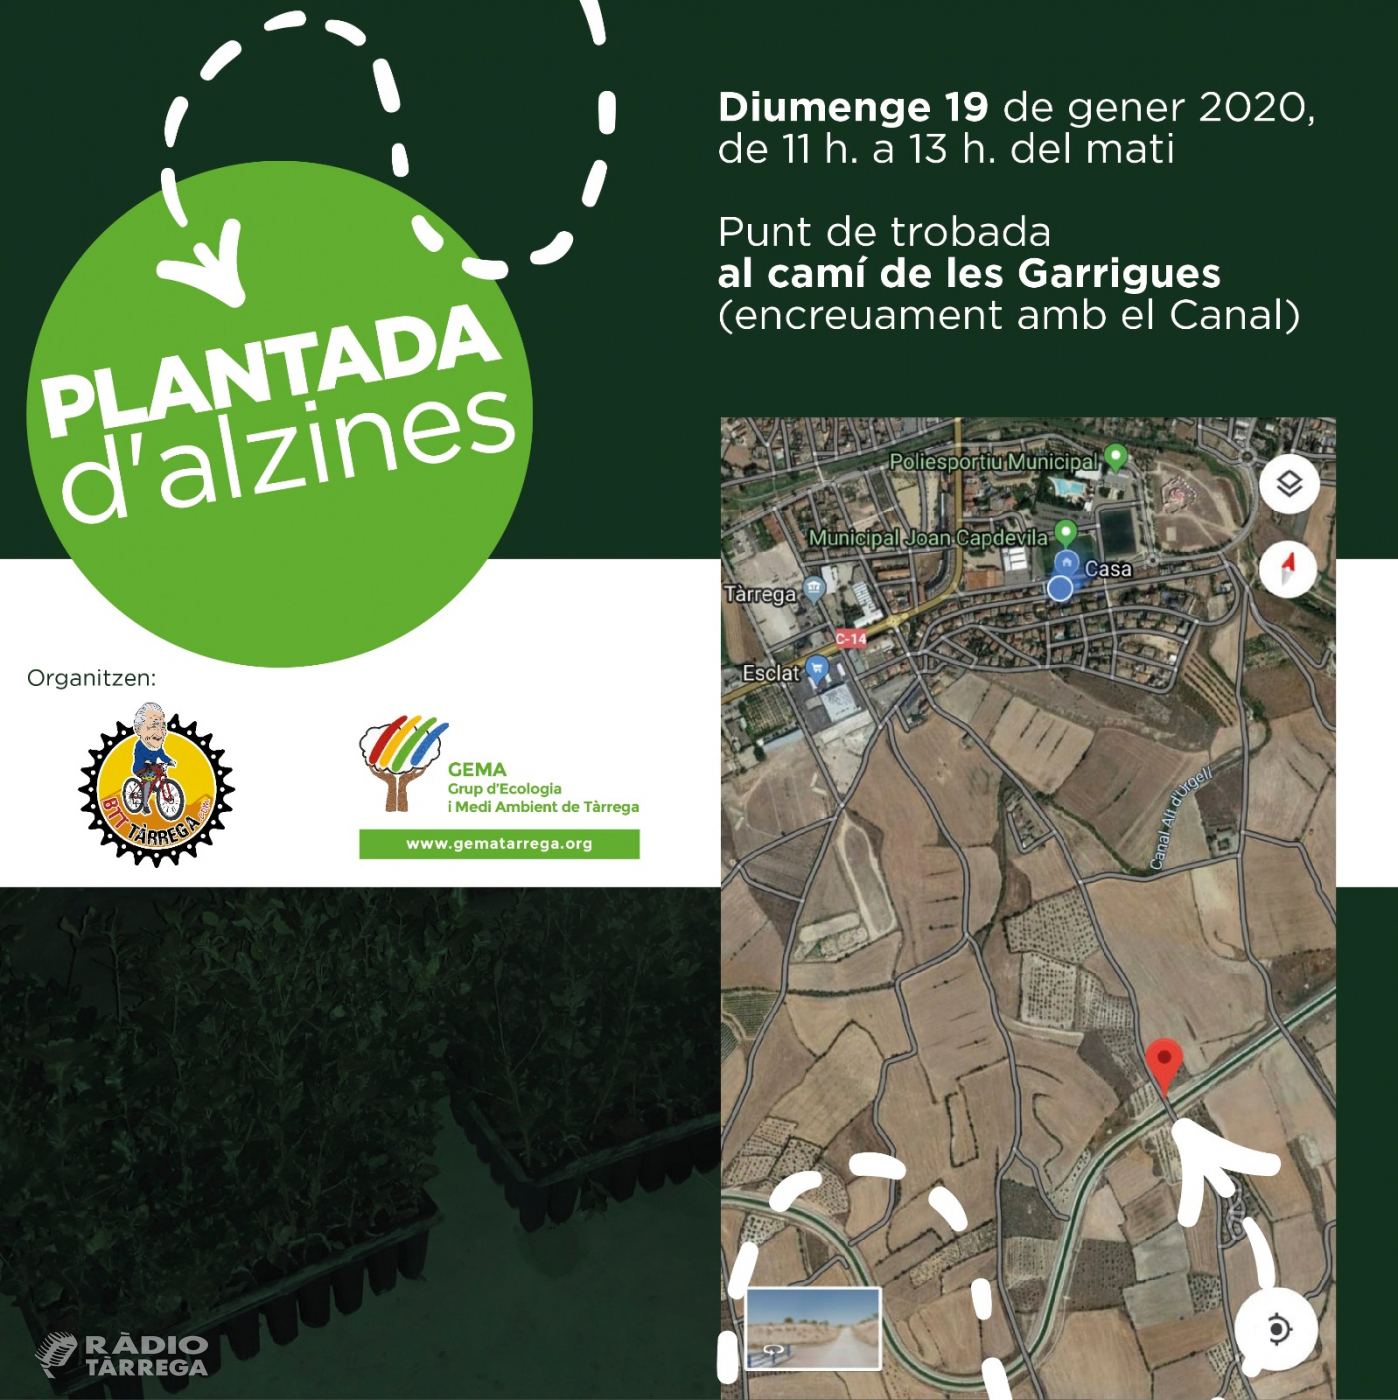 BTT Tàrrega i GEMA organitzen una plantada d'alzines a les zones ermes del canal Segarra Garrigues al seu pas per Tàrrega